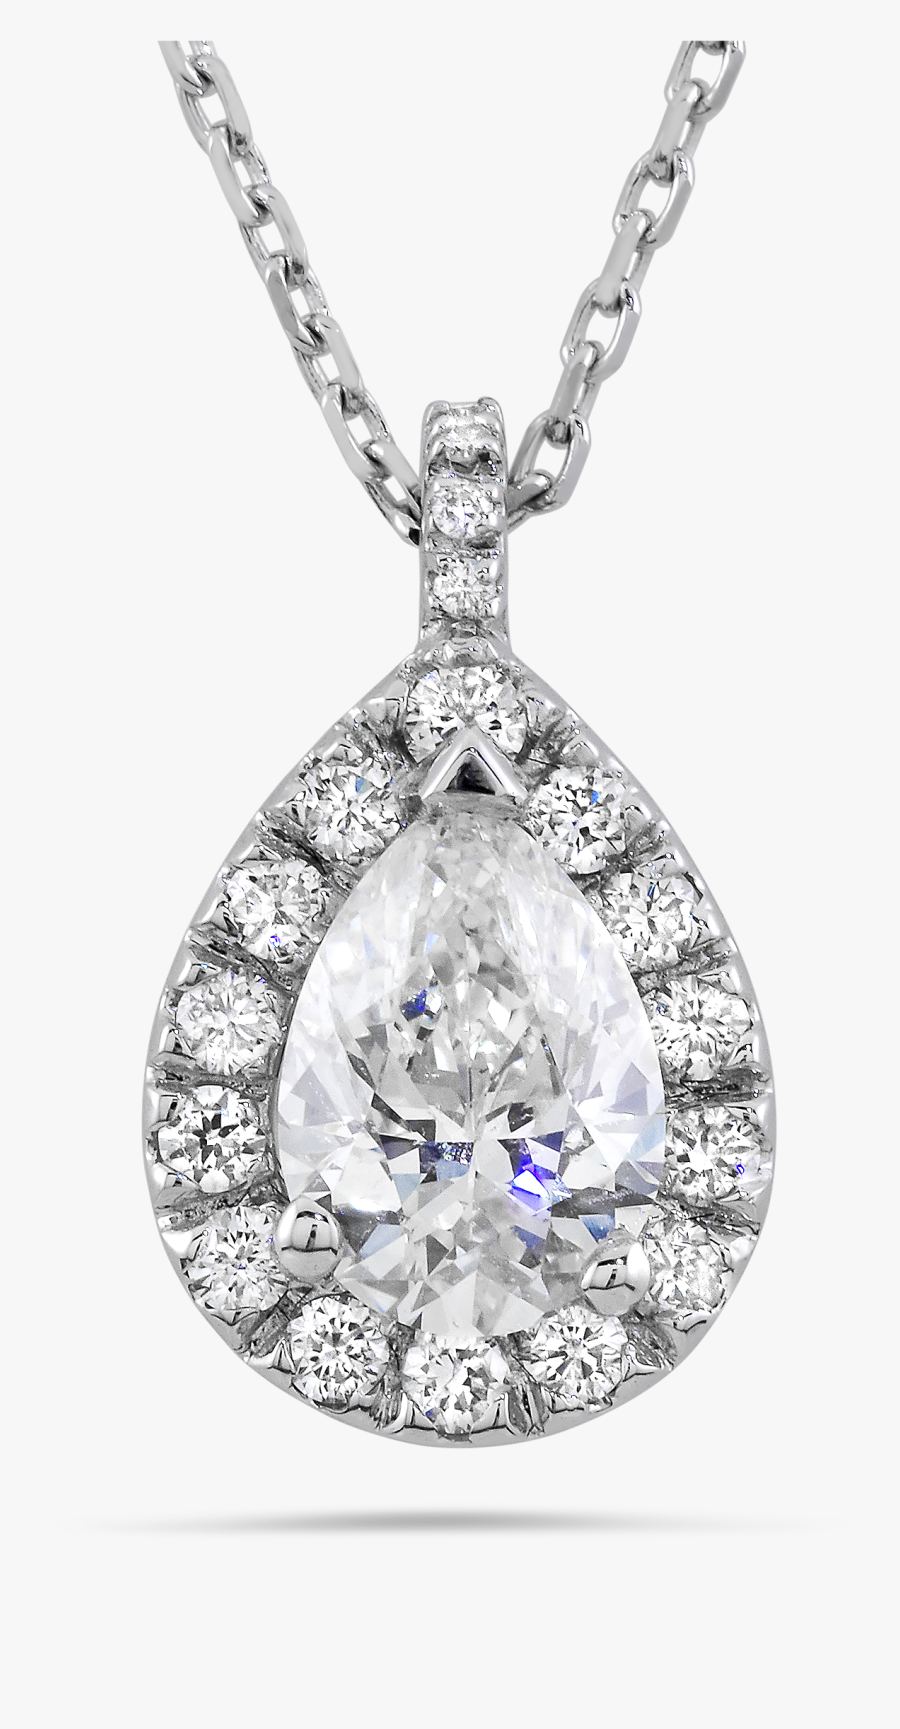 Jewel Clipart Bling - Diamond Necklace Pendant Png, Transparent Clipart